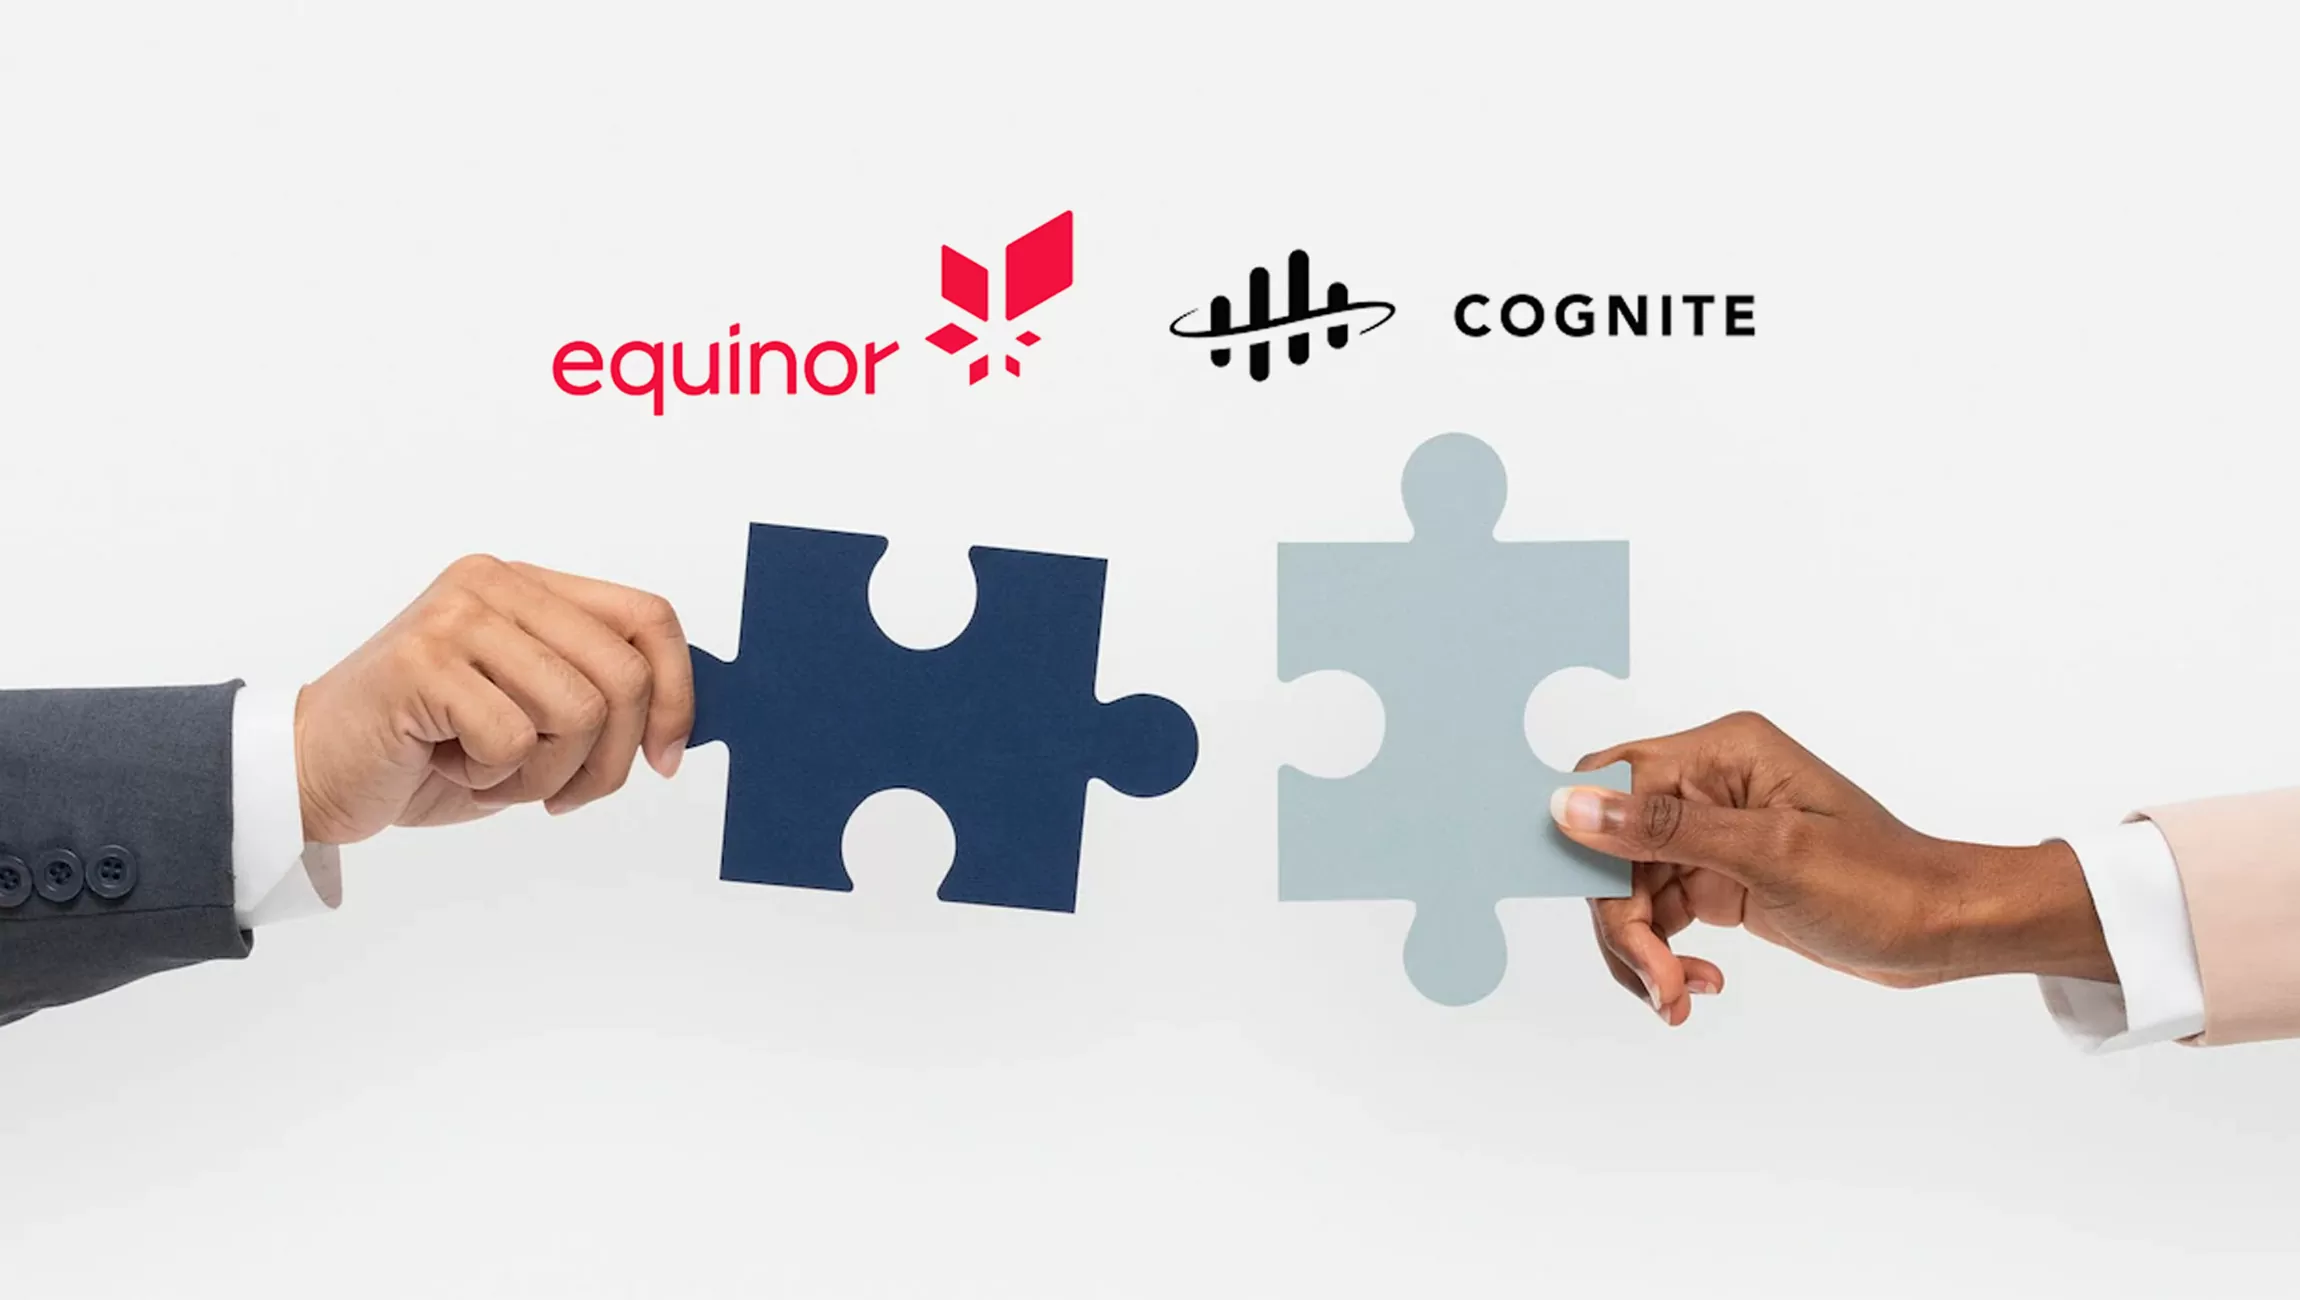 Equinor e Cognite stringono una collaborazione a lungo termine per accelerare ulteriormente il programma di digitalizzazione di Equinor